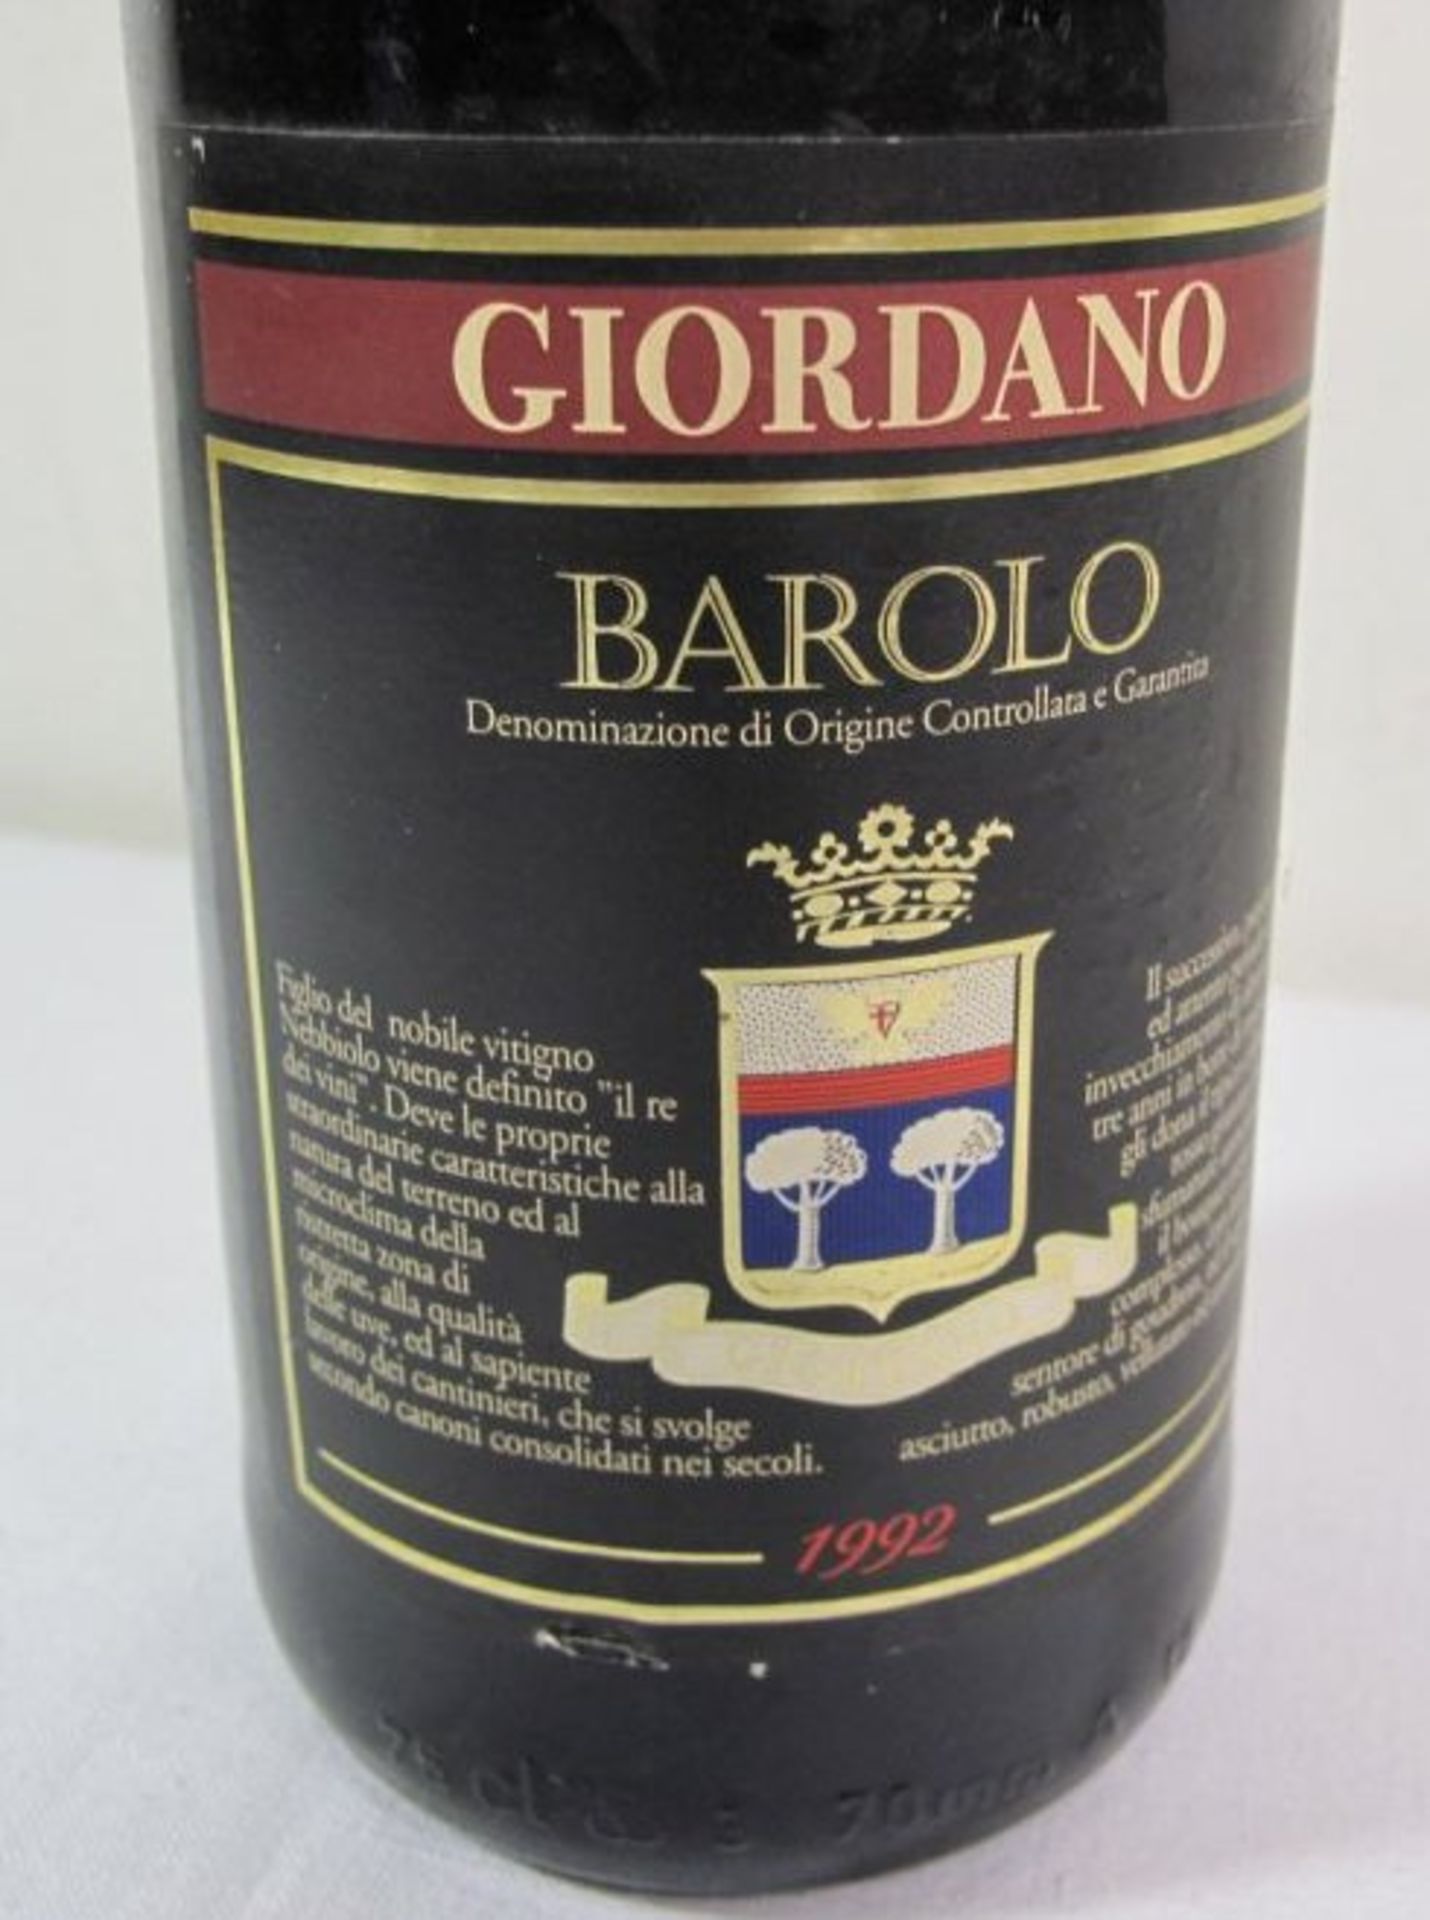 Flasche Rotwein "Giordano Barolo", 1992er . - Bild 2 aus 2